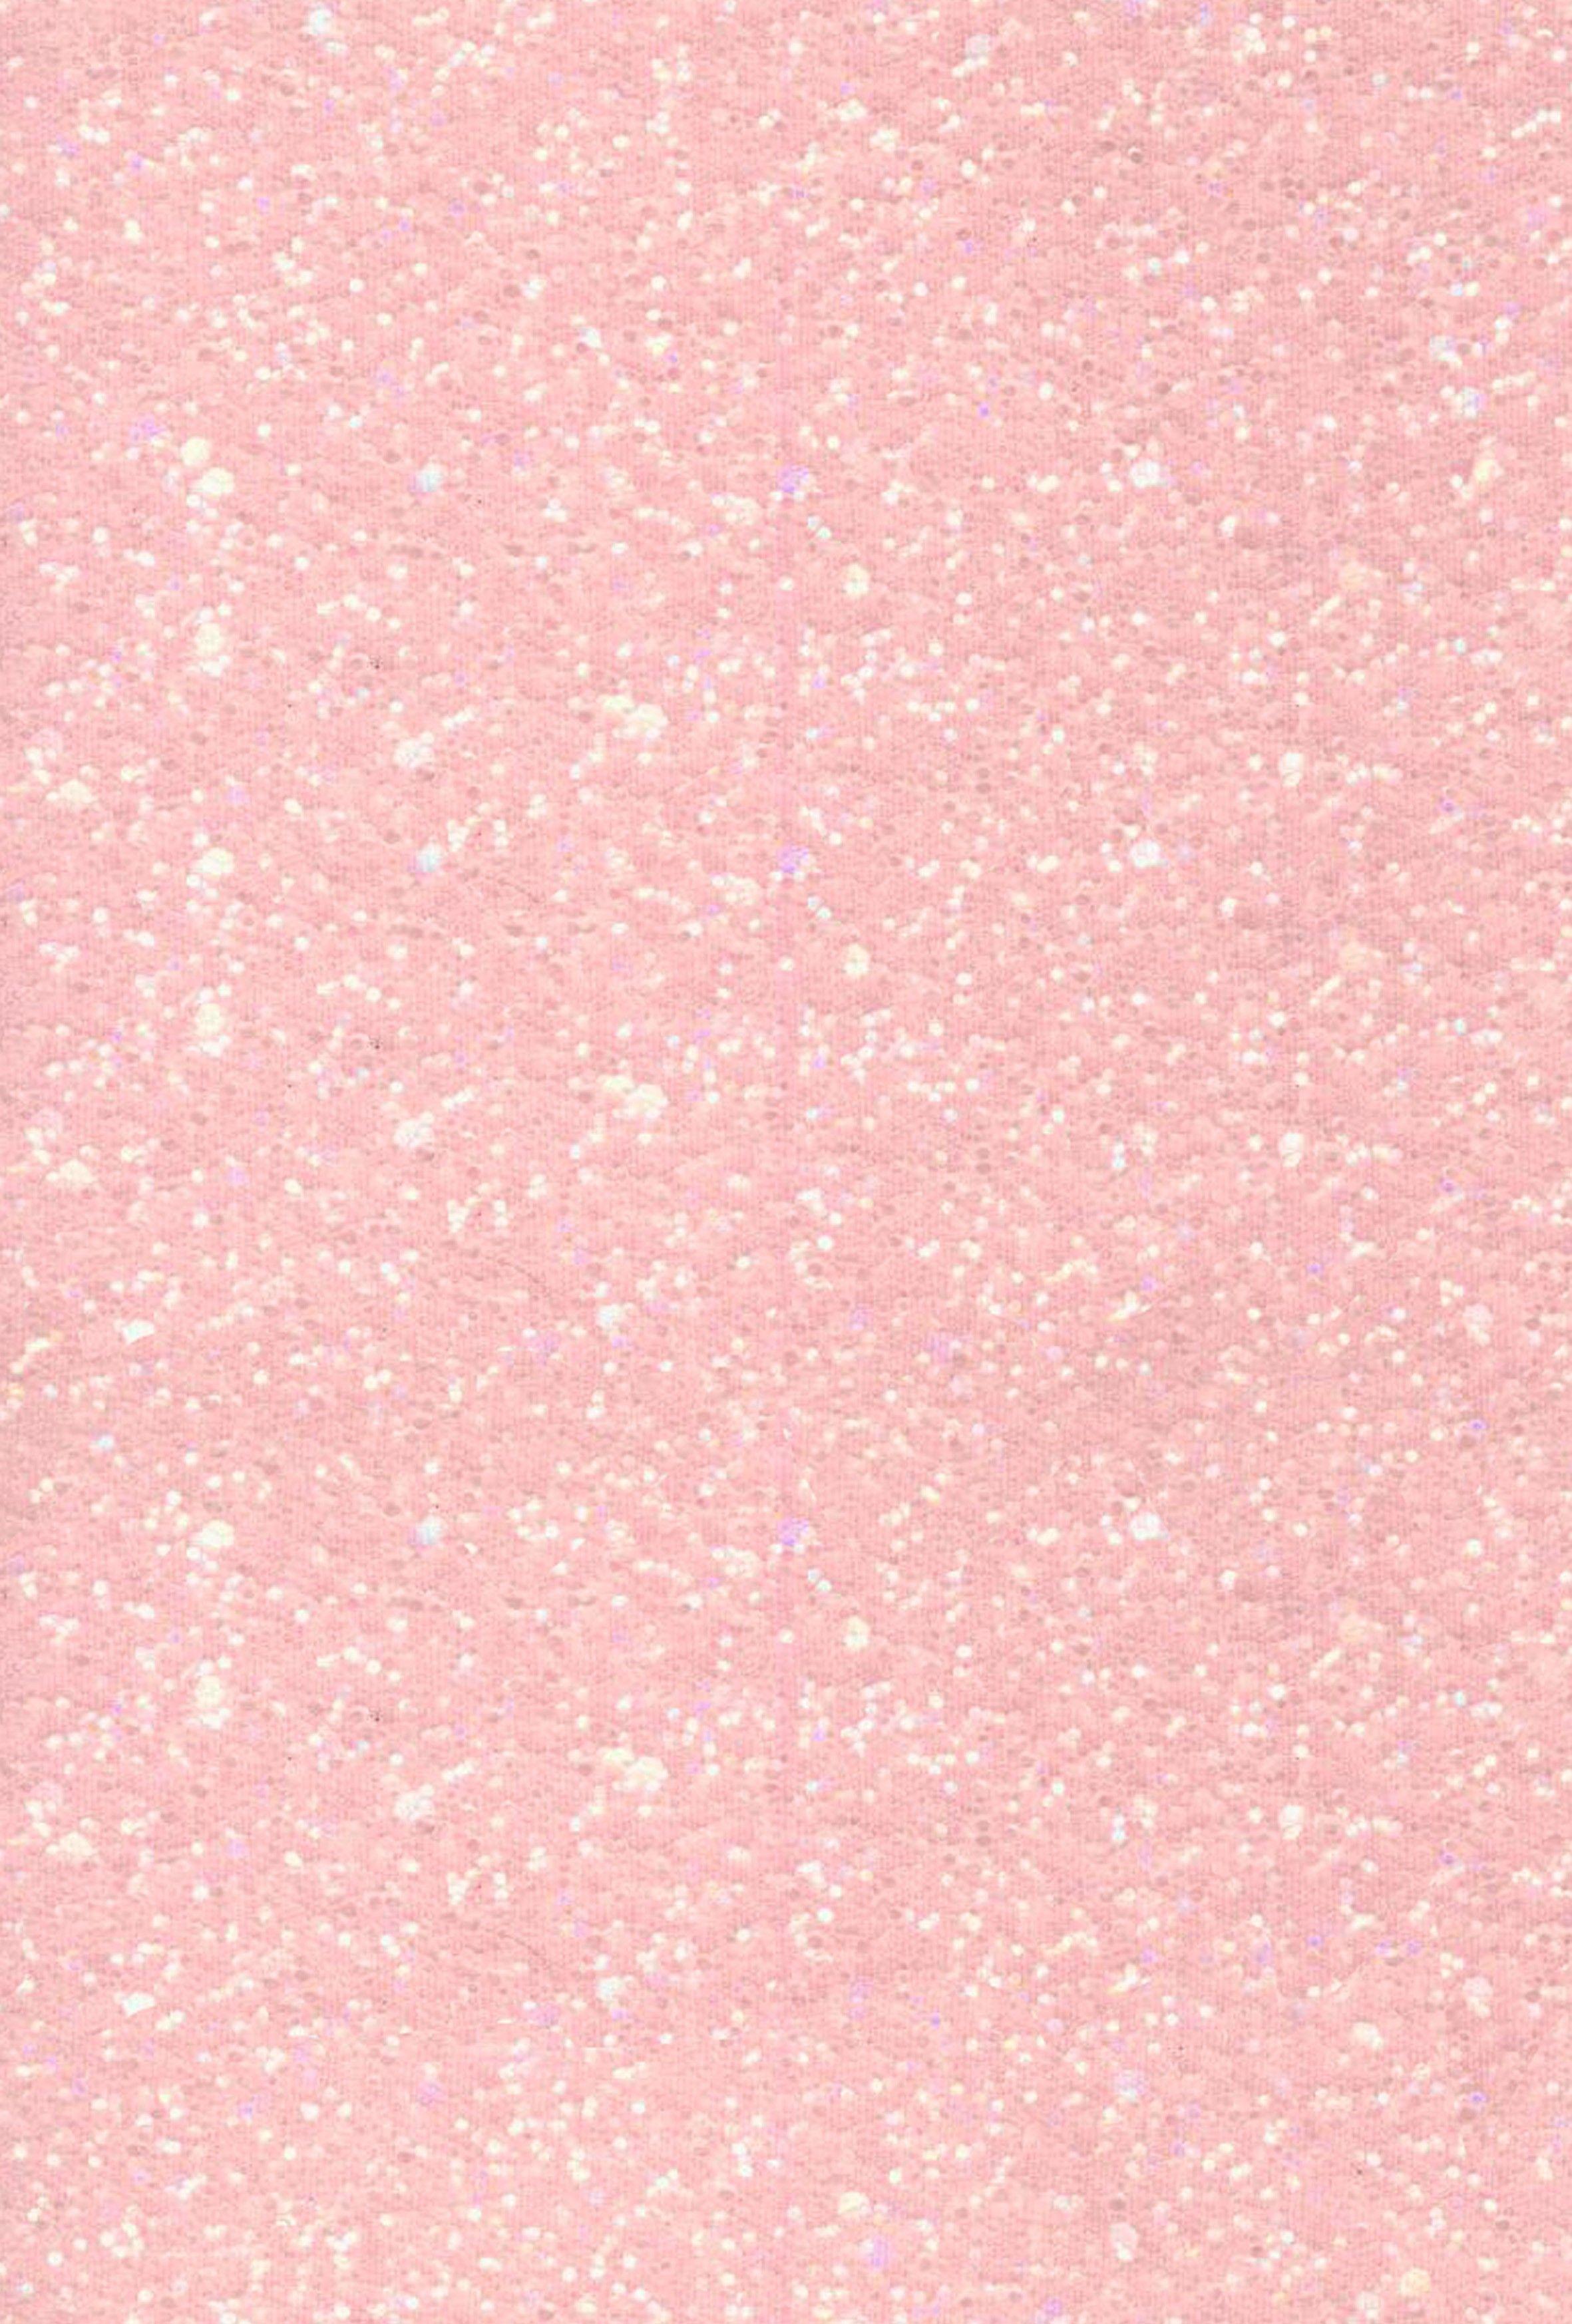 Light Pink Glitter Wallpapers - Top Free Light Pink Glitter Backgrounds -  WallpaperAccess